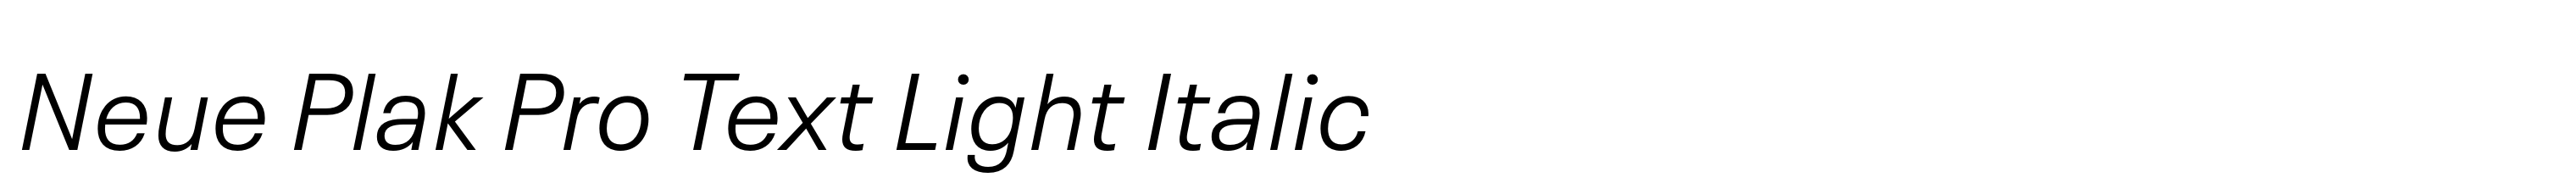 Neue Plak Pro Text Light Italic